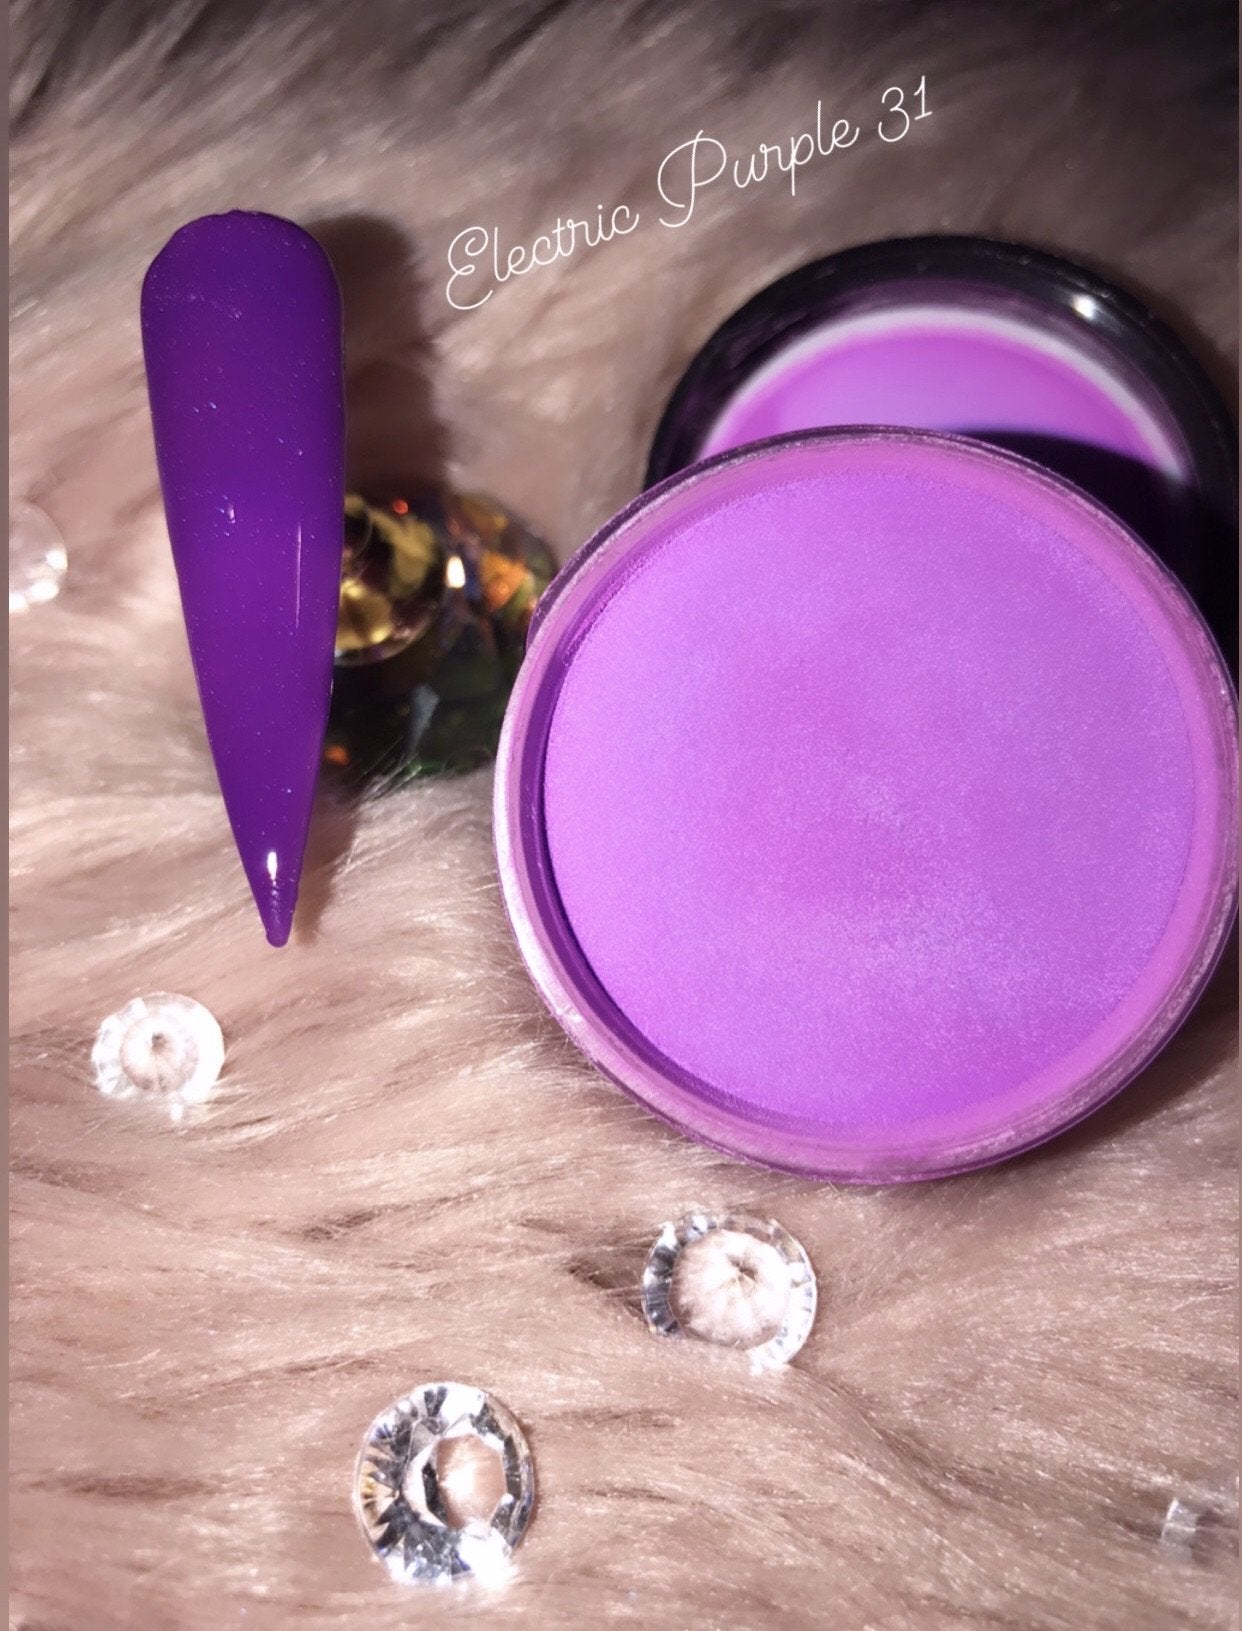 Glazed Electric Purple Acrylic Powder no.31 28g